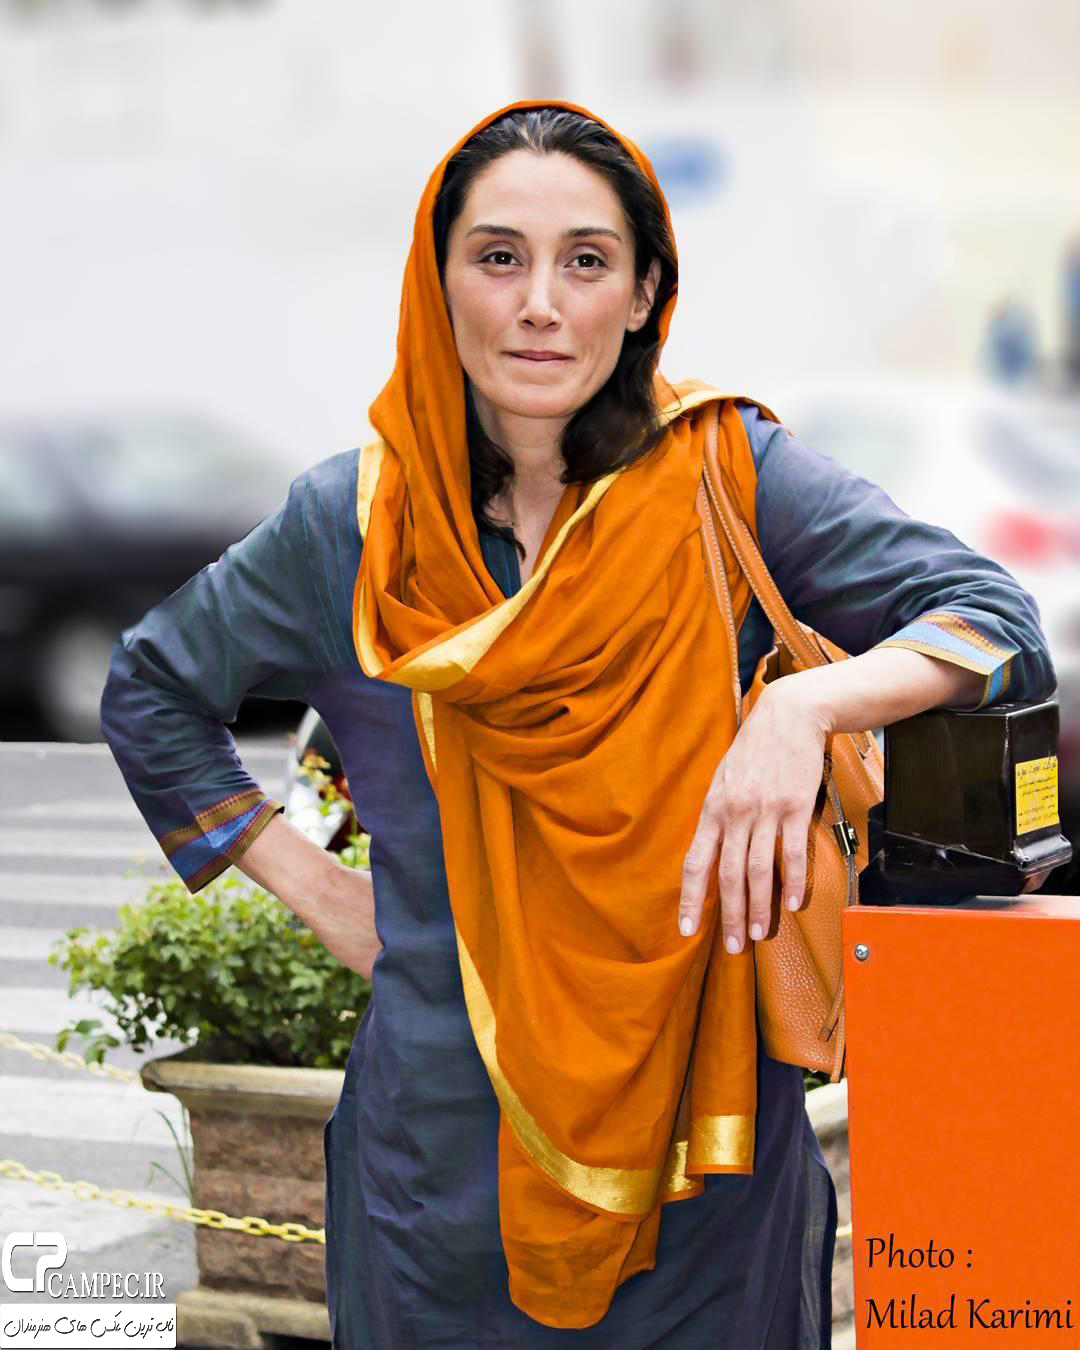 هدیه تهرانی در اکران فیلم پات